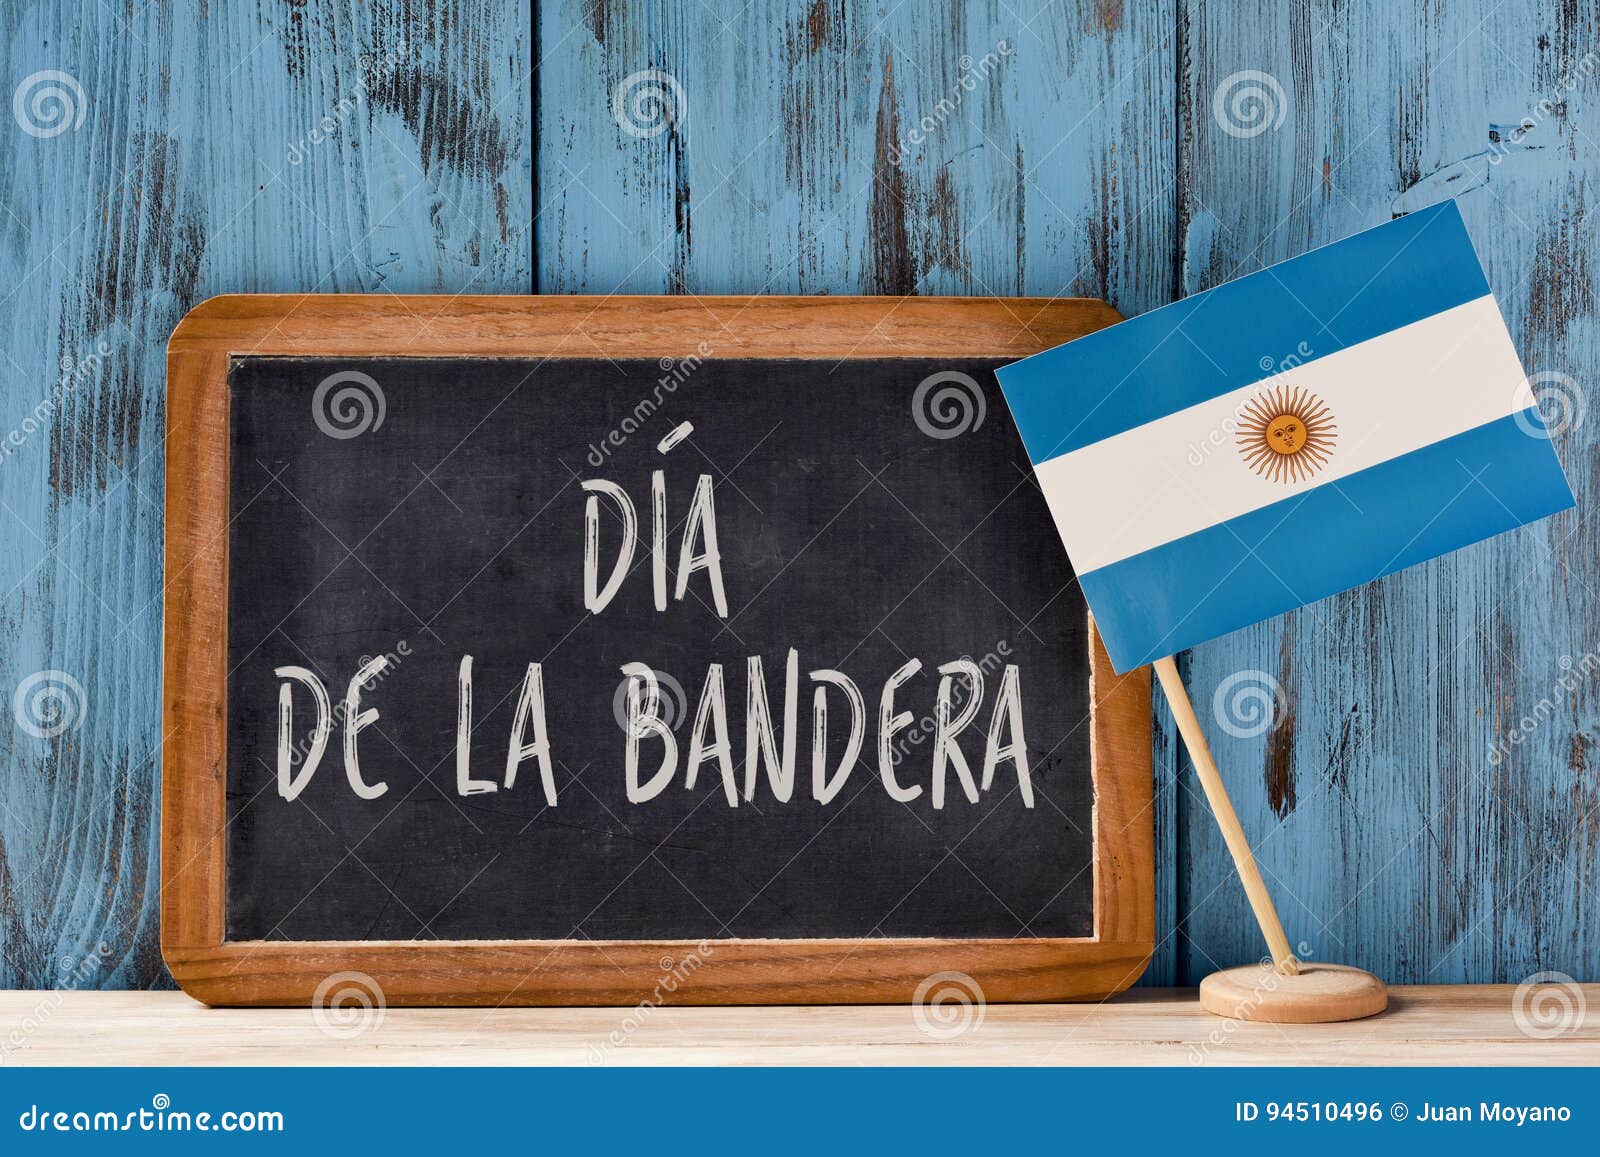 dia de la bandera, flag day of argentina